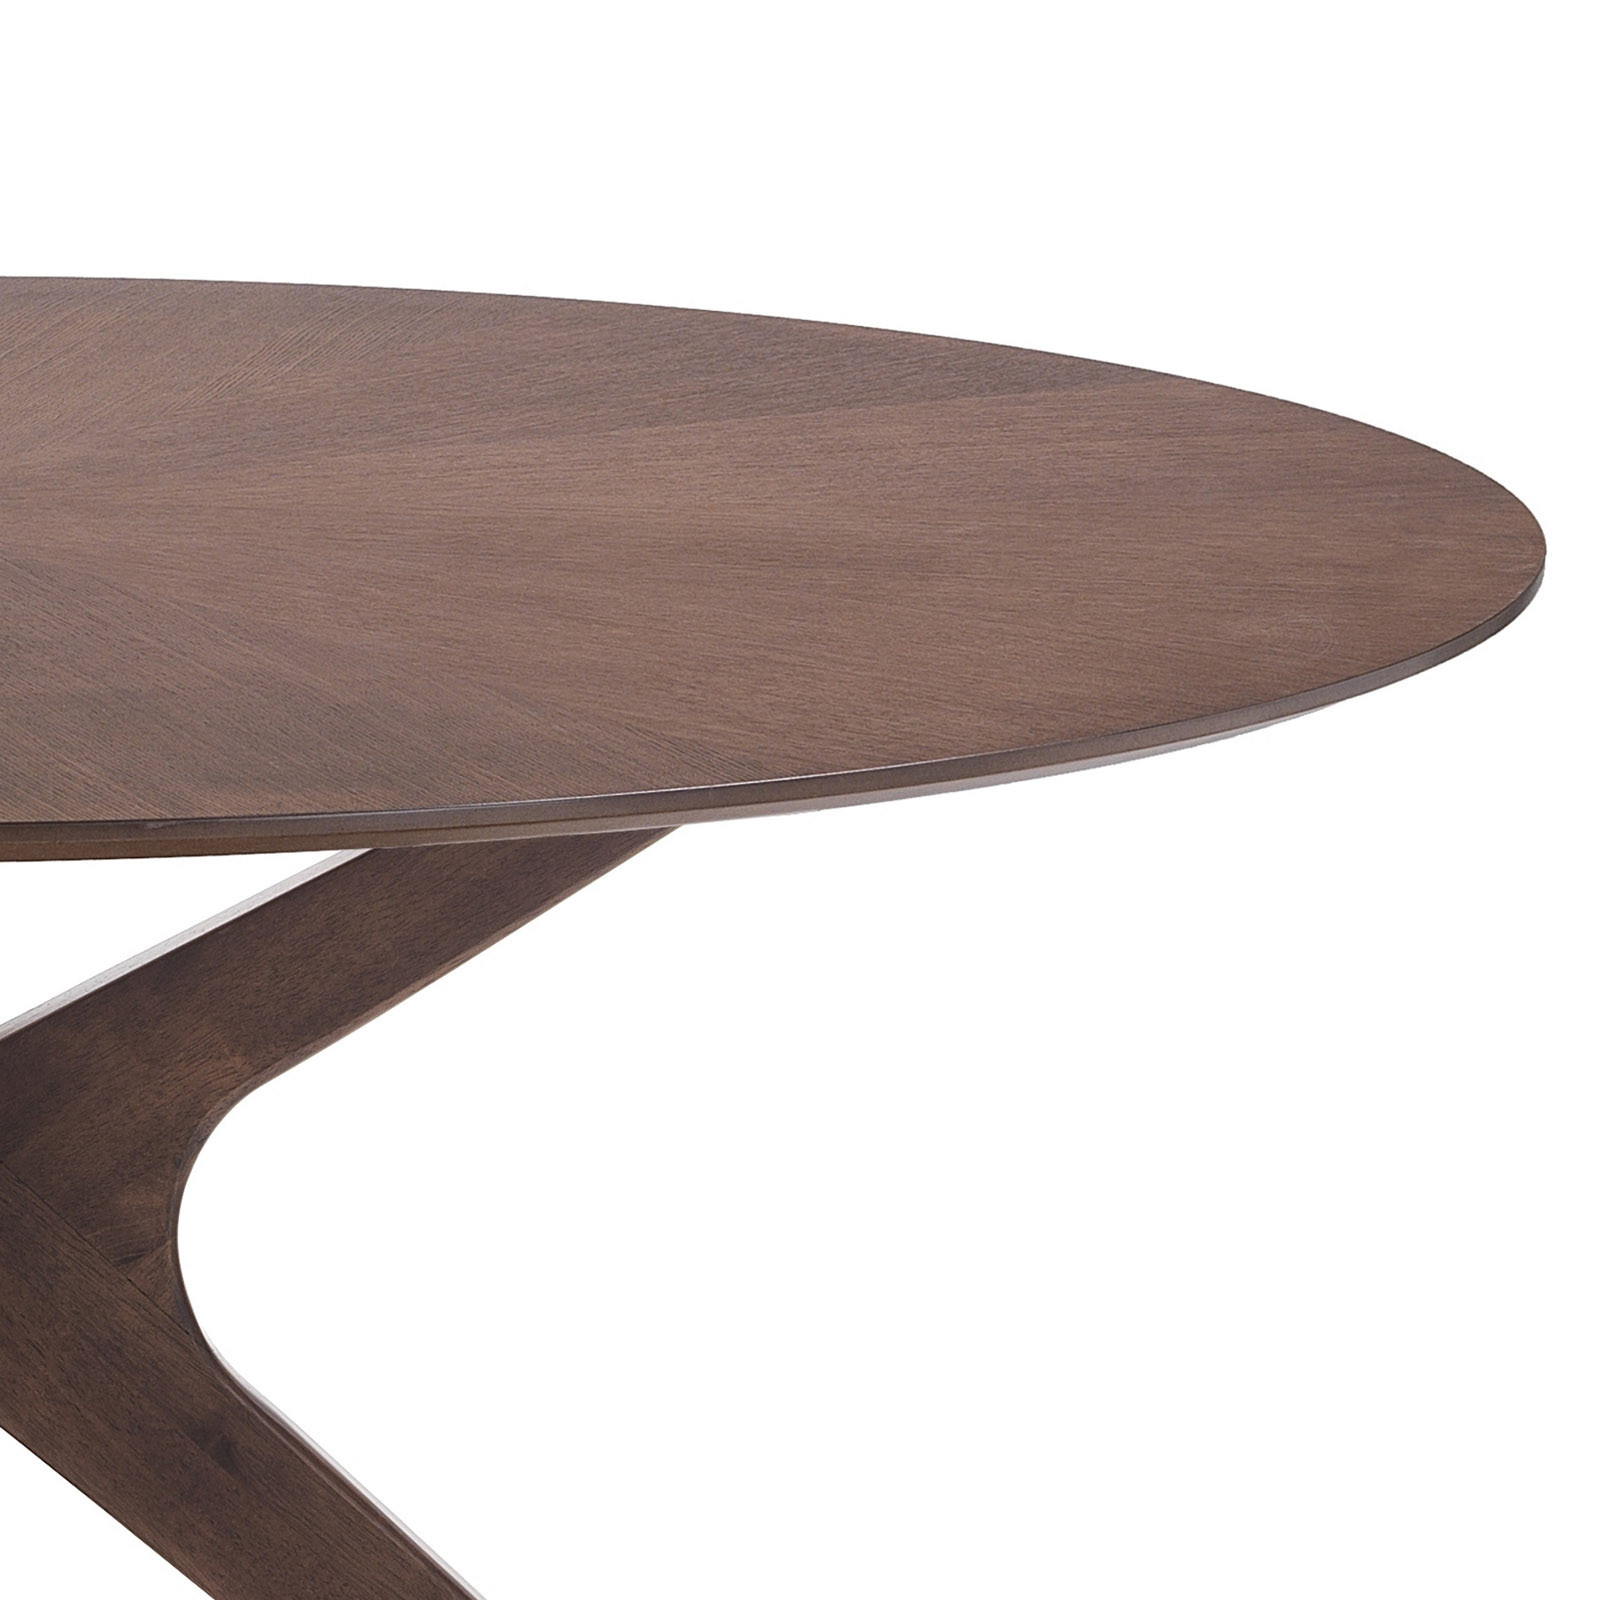 Tavolo Rotondo in legno Chase impiallacciato finitura Noce scuro e Gambe in legno massello, diametro 137 cm